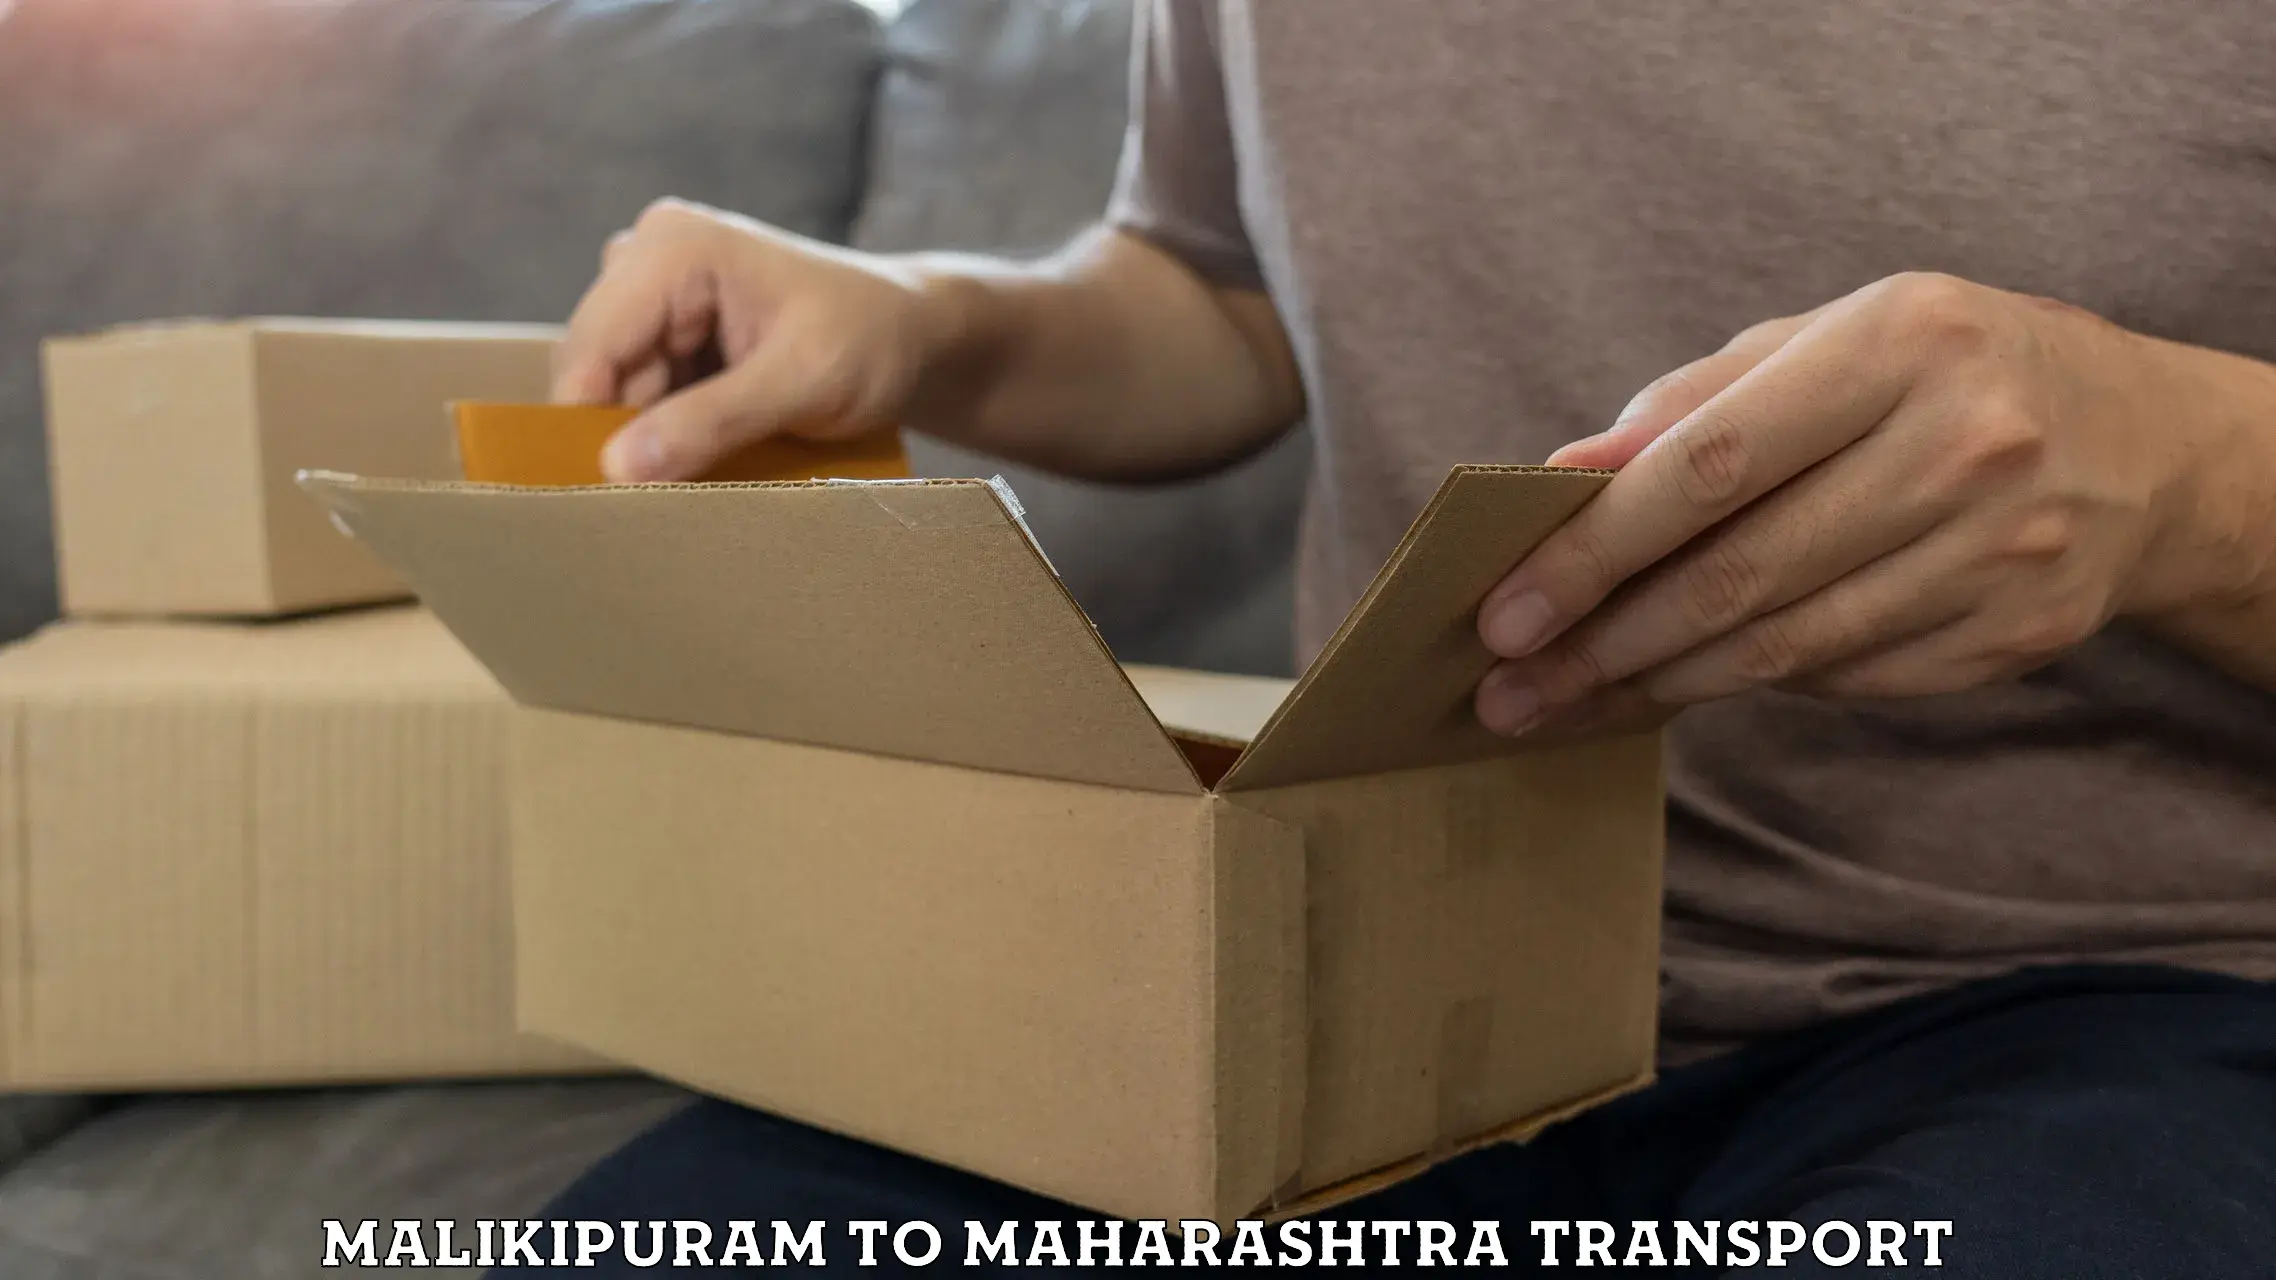 Furniture transport service Malikipuram to Nagothane